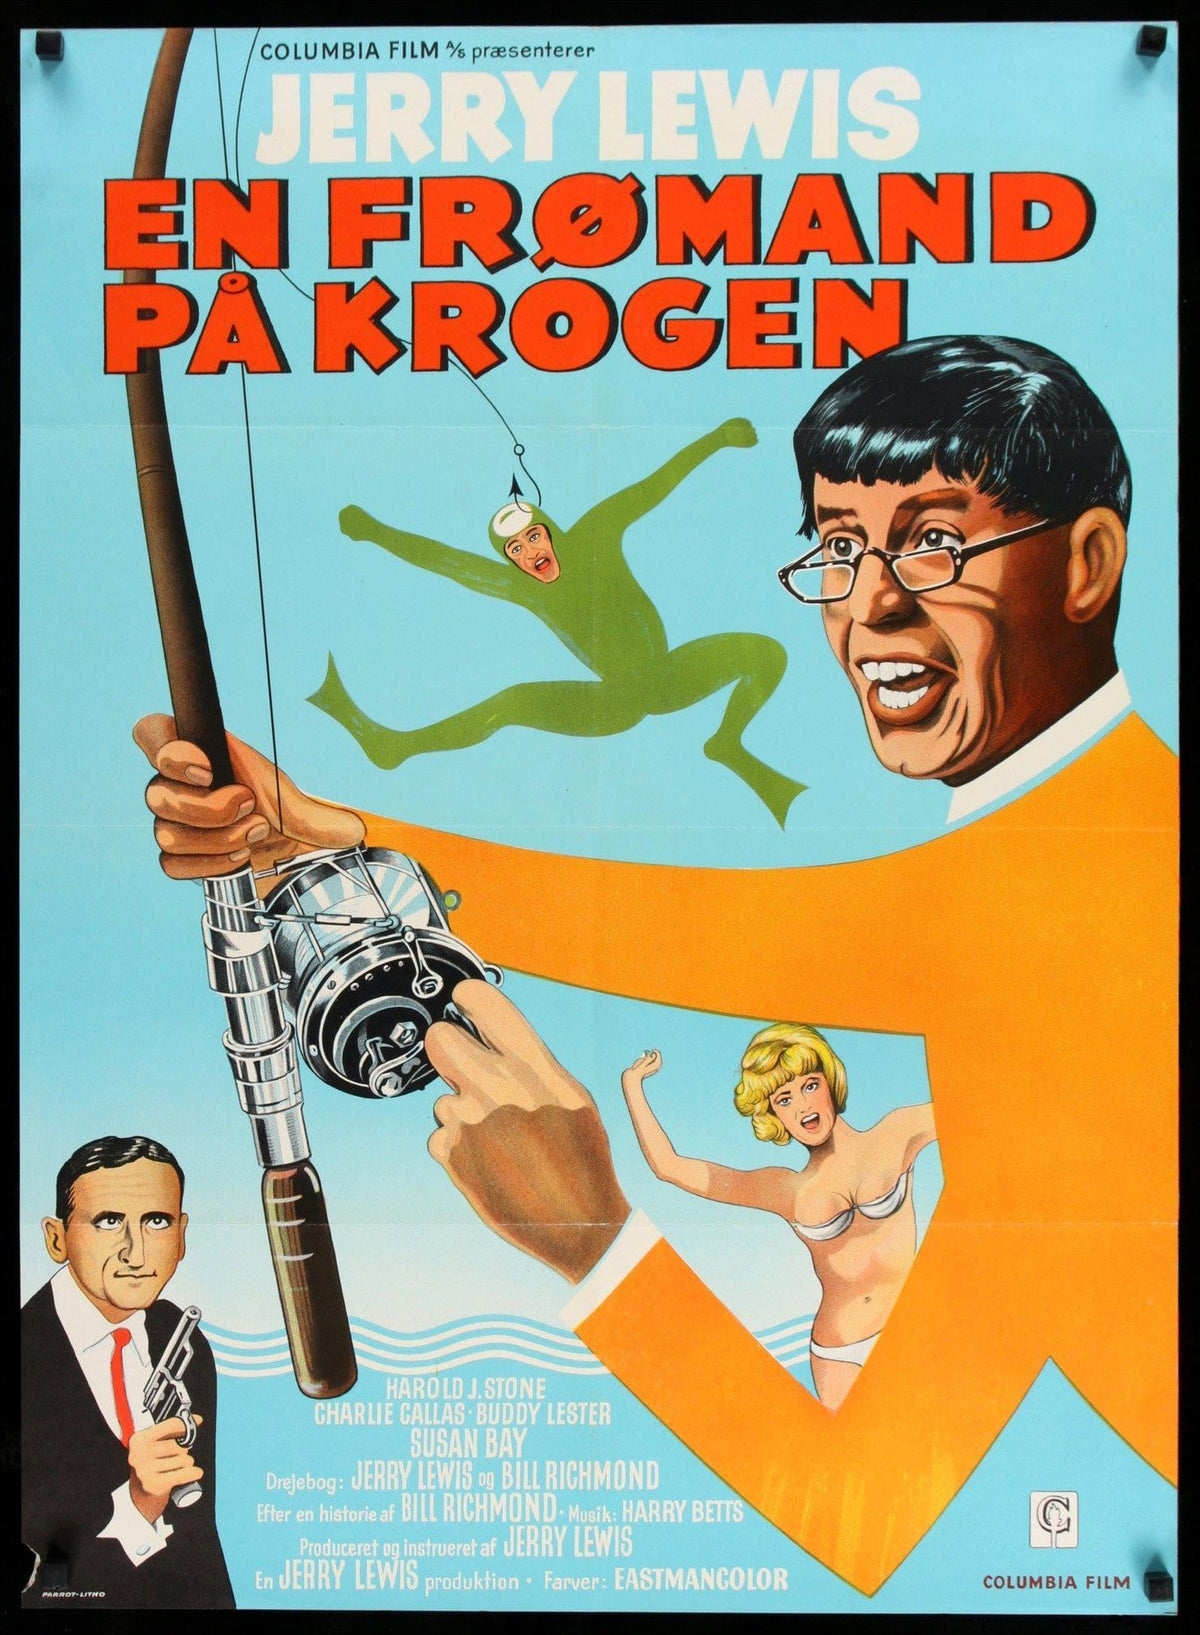 Big Mouth (1967) original movie poster for sale at Original Film Art